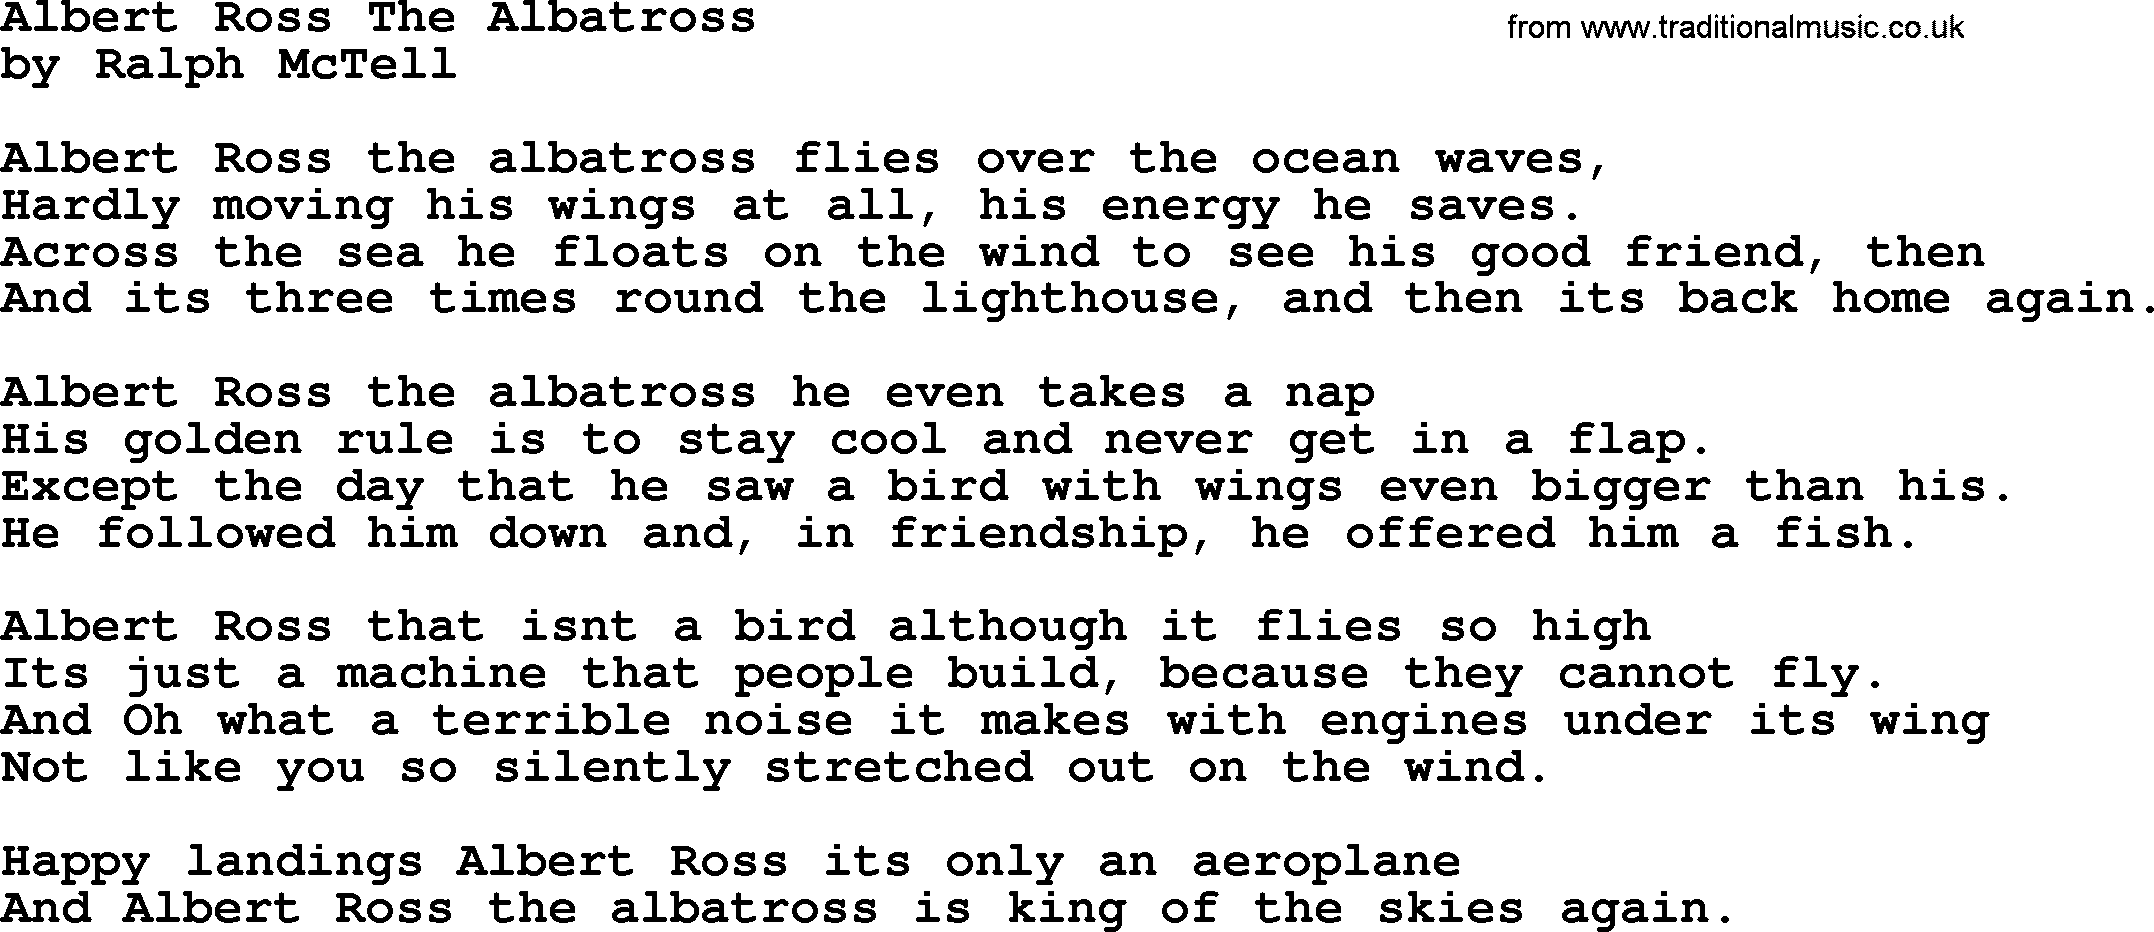 Ralph McTell Song: Albert Ross The Albatross, lyrics